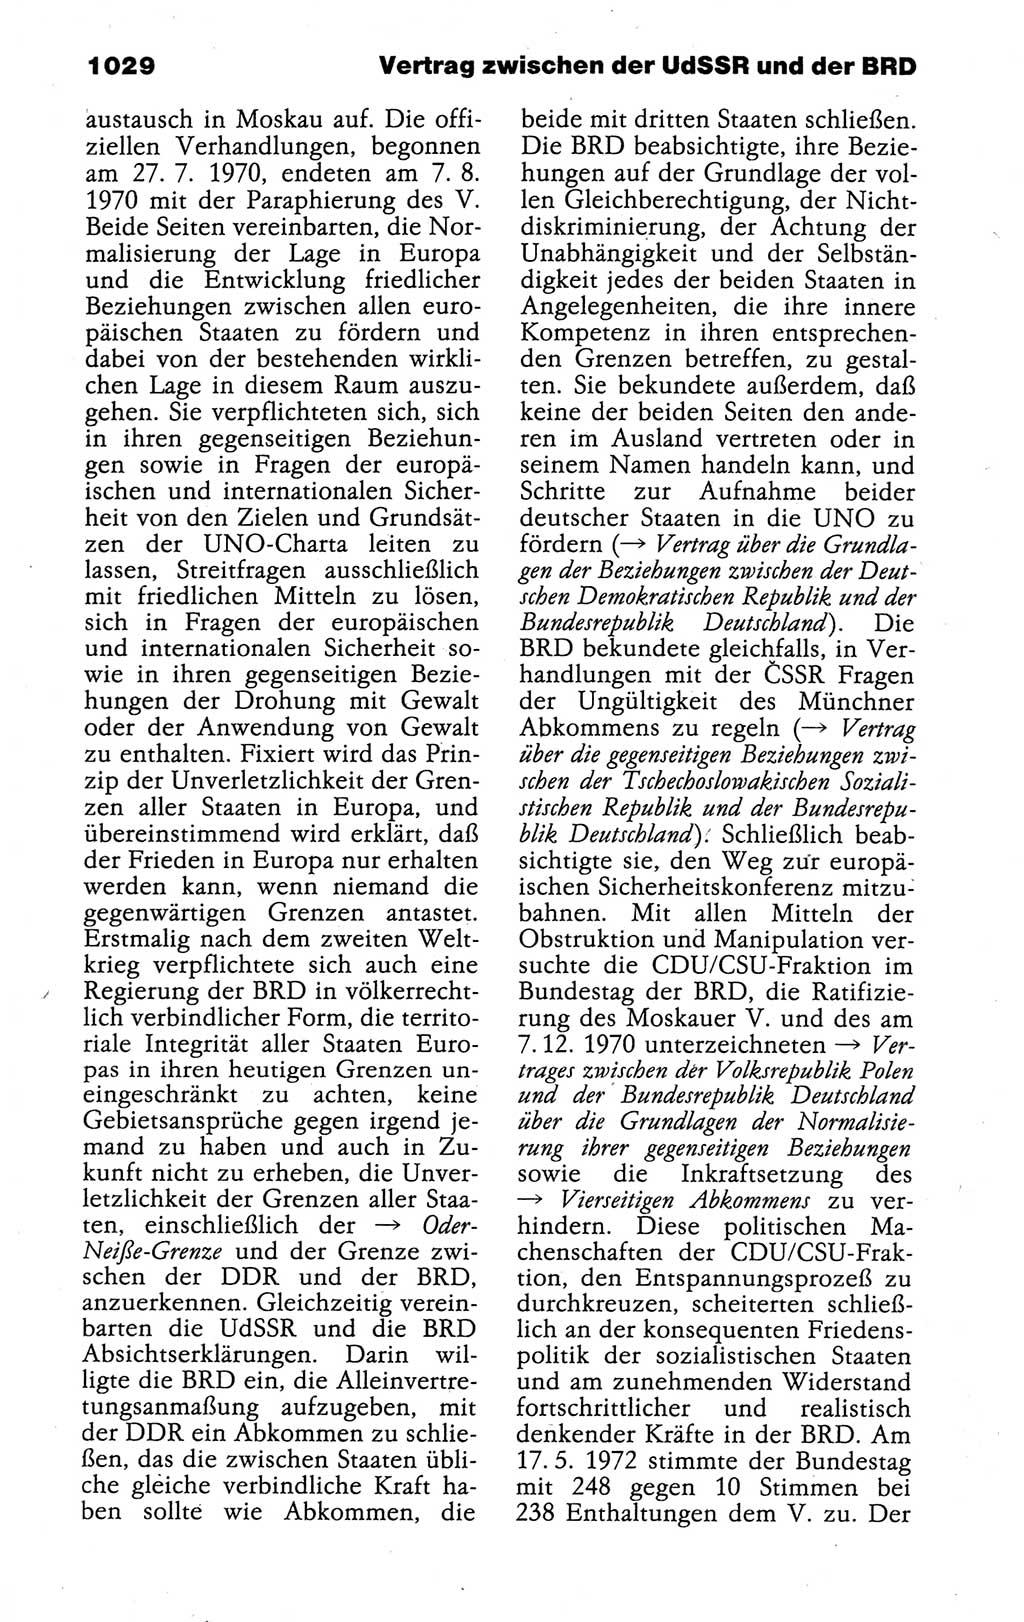 Kleines politisches Wörterbuch [Deutsche Demokratische Republik (DDR)] 1988, Seite 1029 (Kl. pol. Wb. DDR 1988, S. 1029)